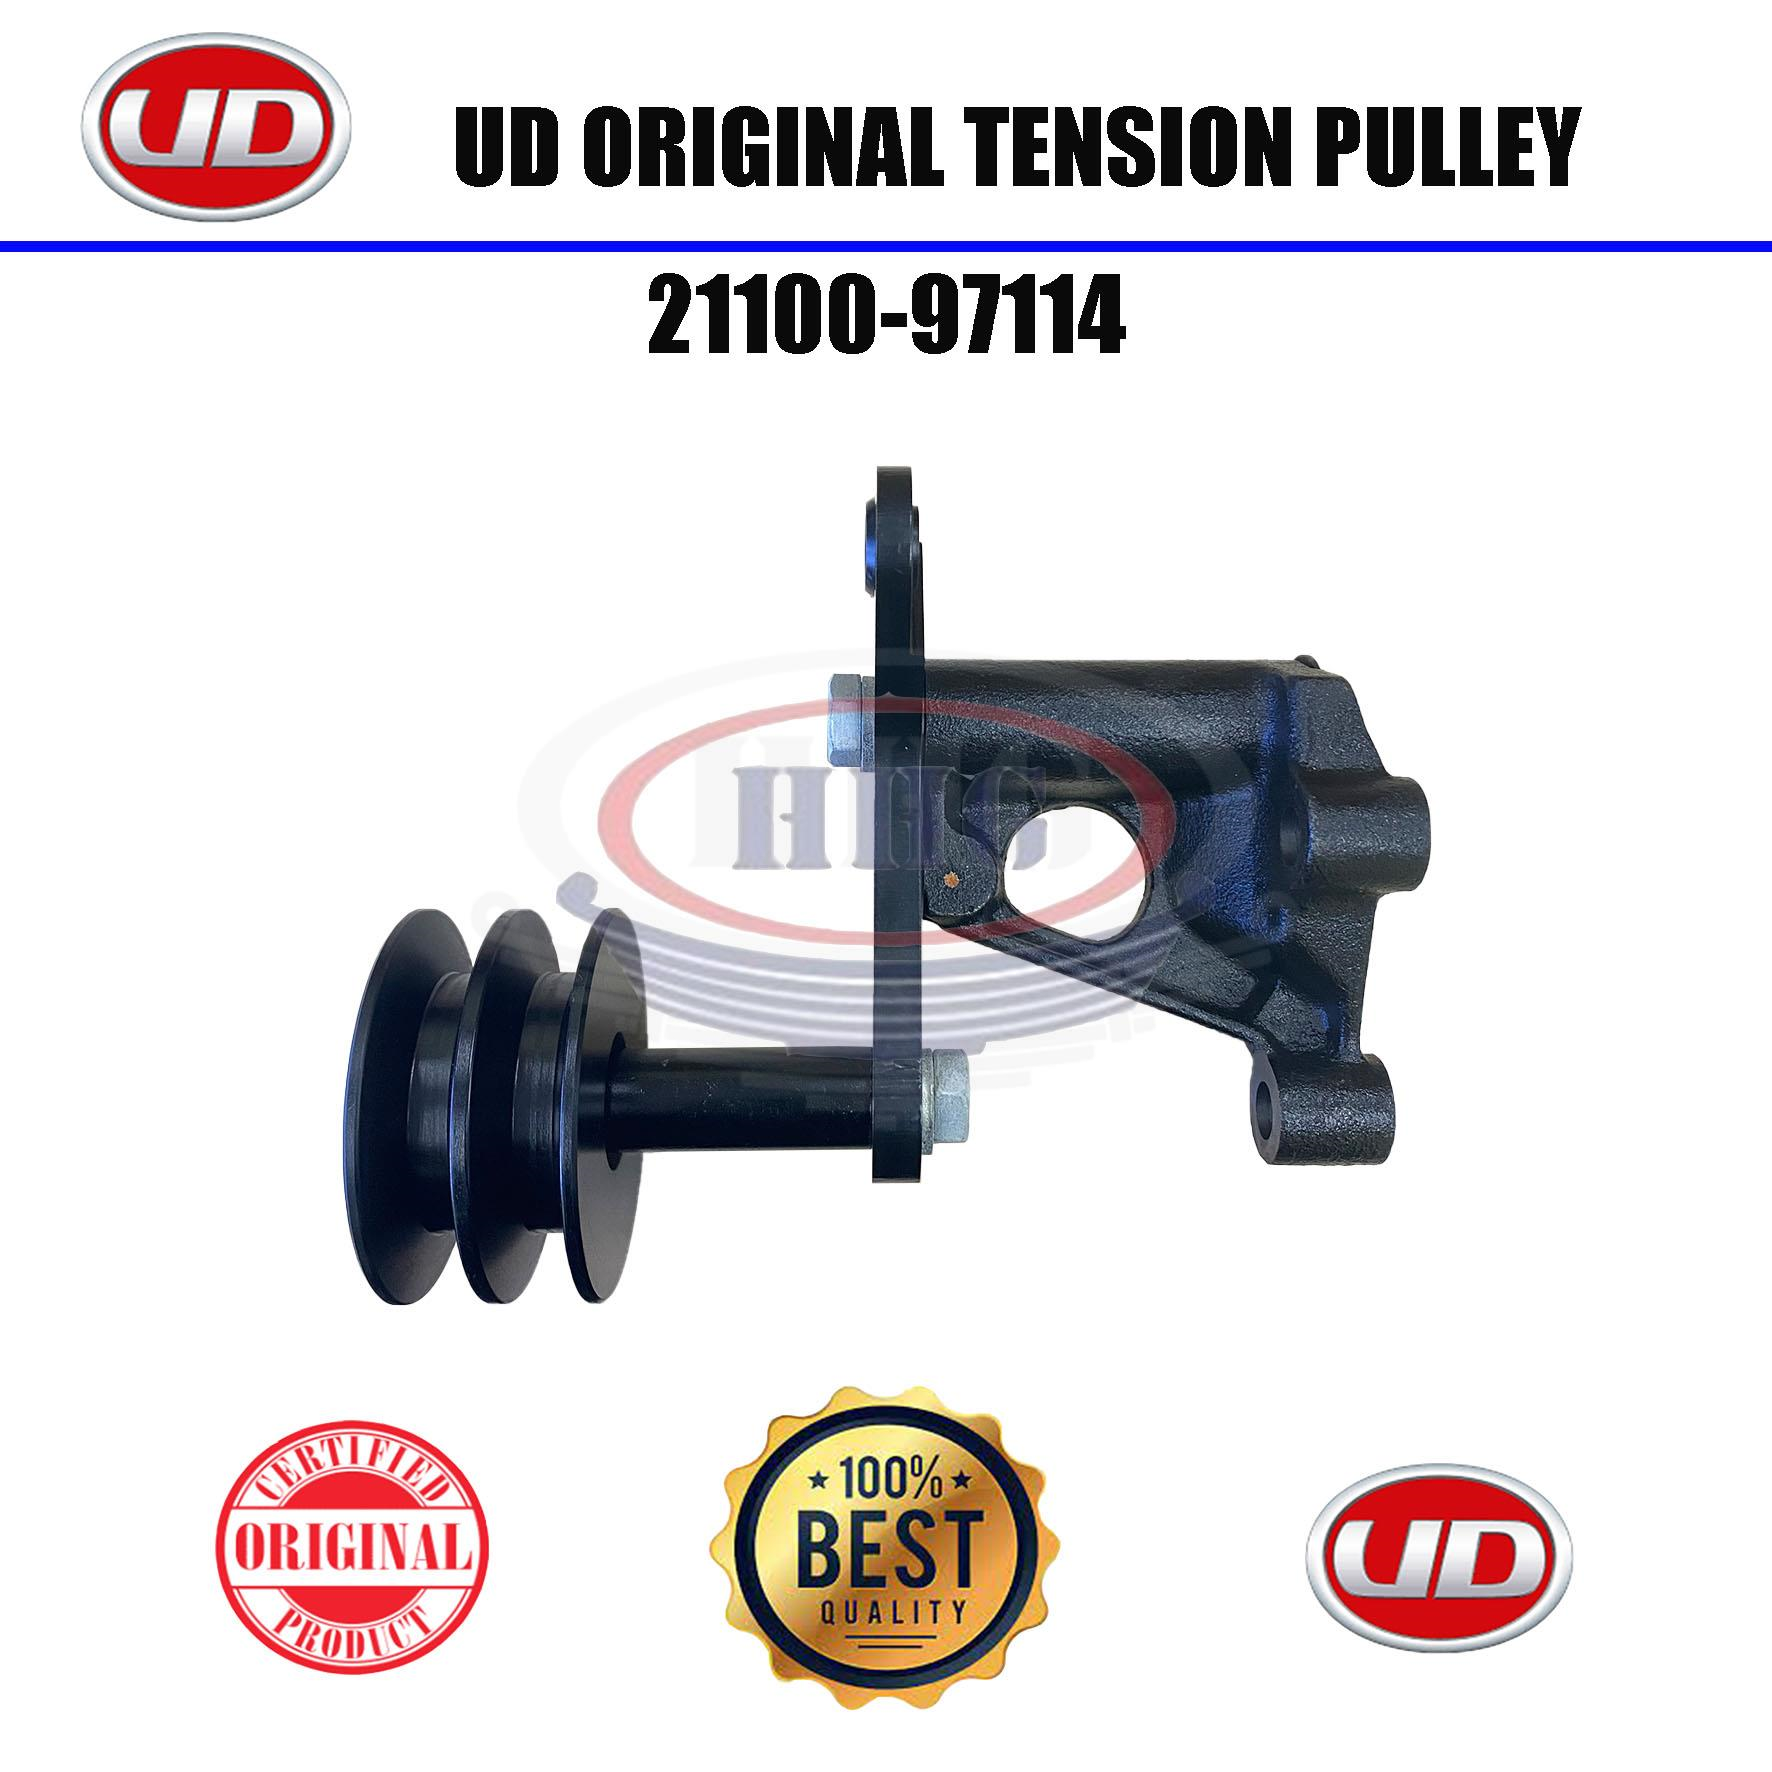 UD Original RF8 Tension Pulley (21100-97114)